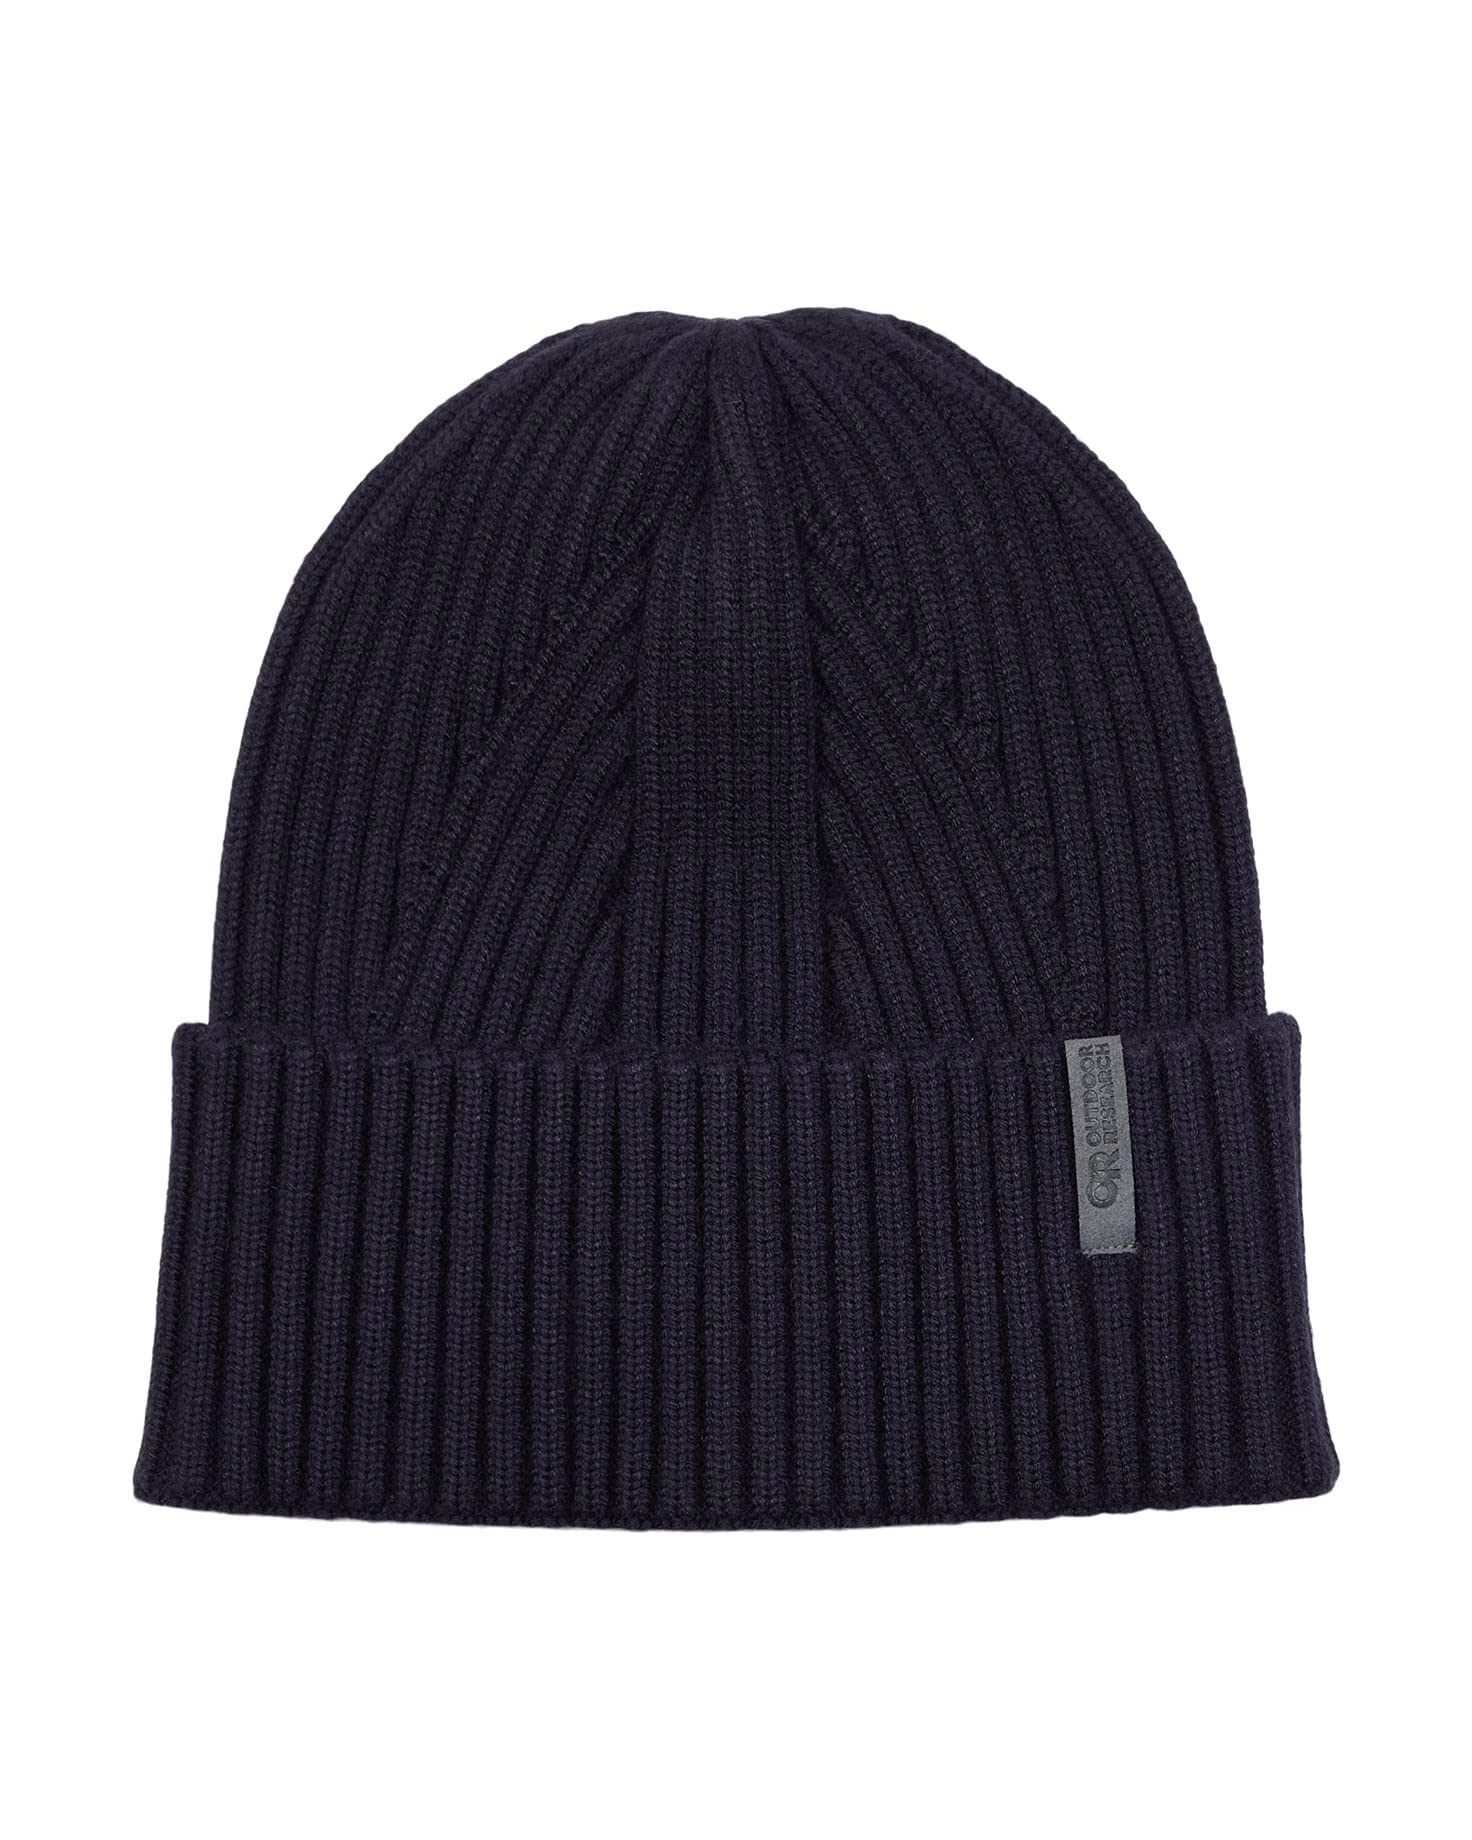 Los 10 sombreros de invierno más empacables, elegantes y más cálidos - 7